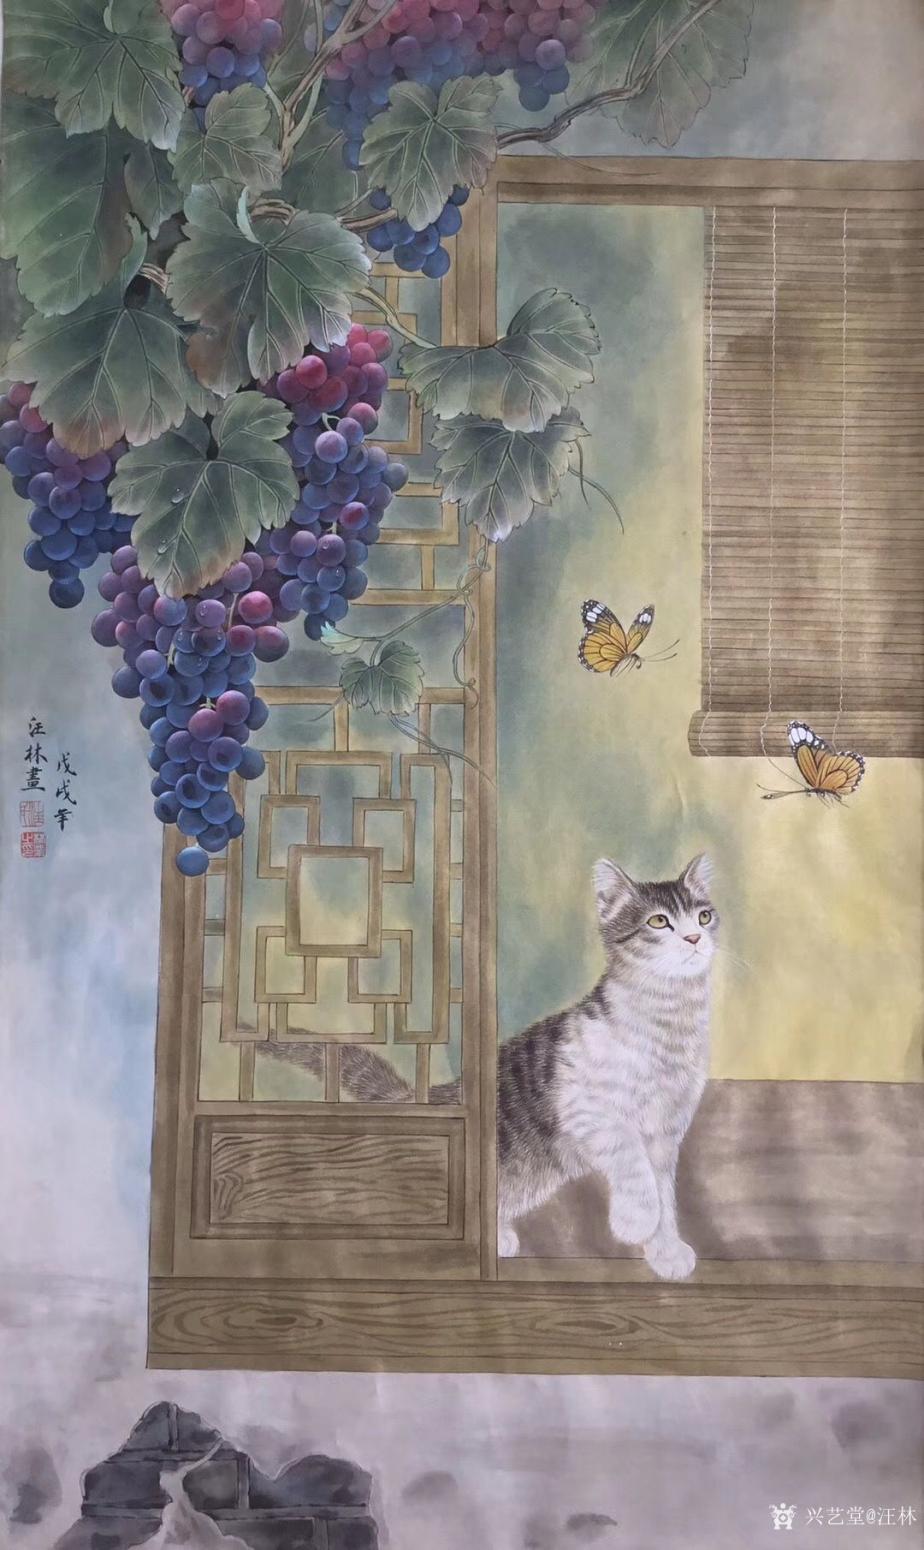 汪林国画作品《猫蝶图》